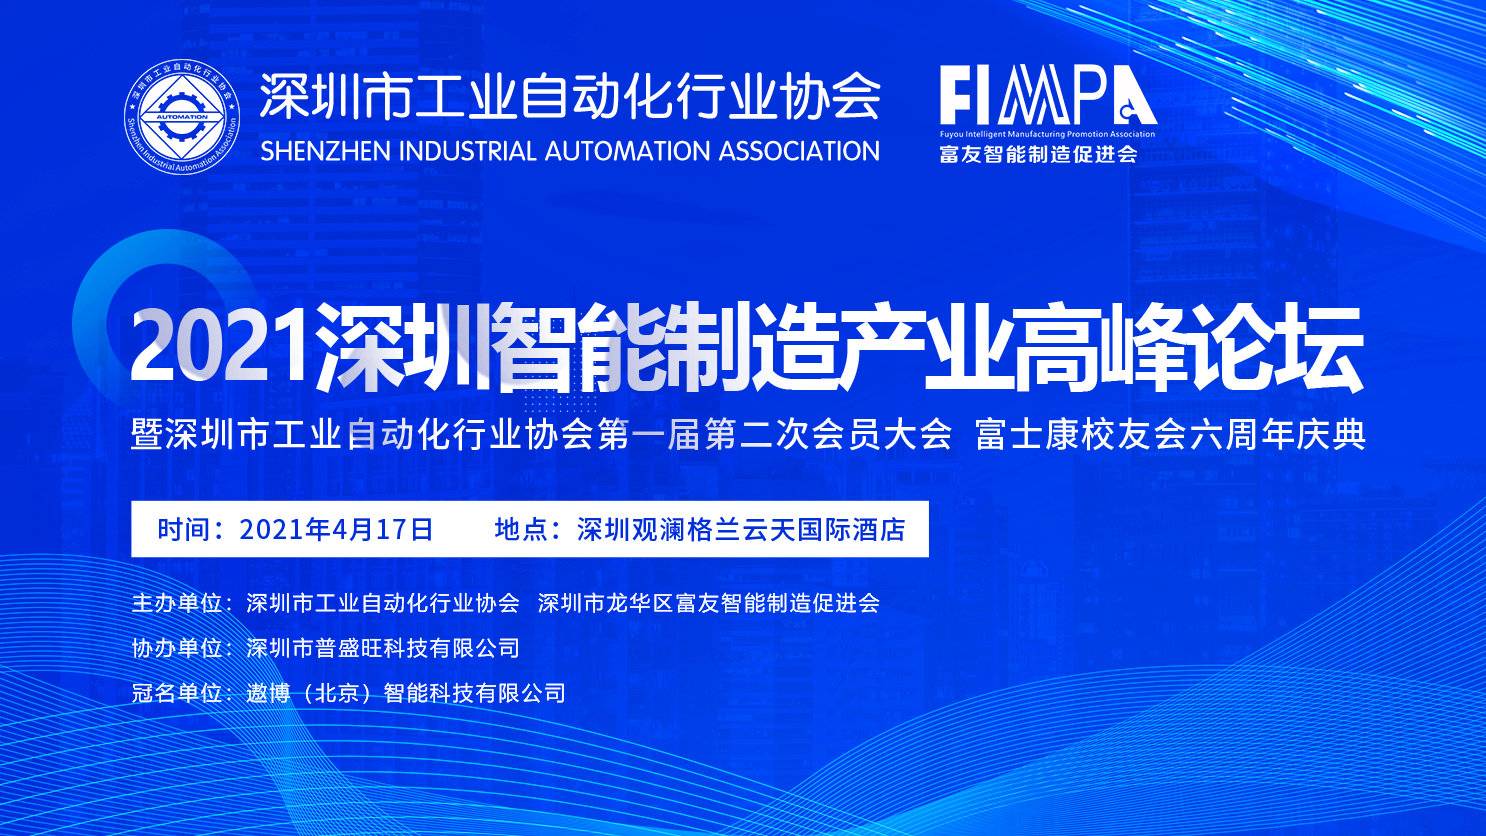 信宇人出席深圳市工业自动化行业协会2021智能制造产业高峰论坛暨首届二次会员大会